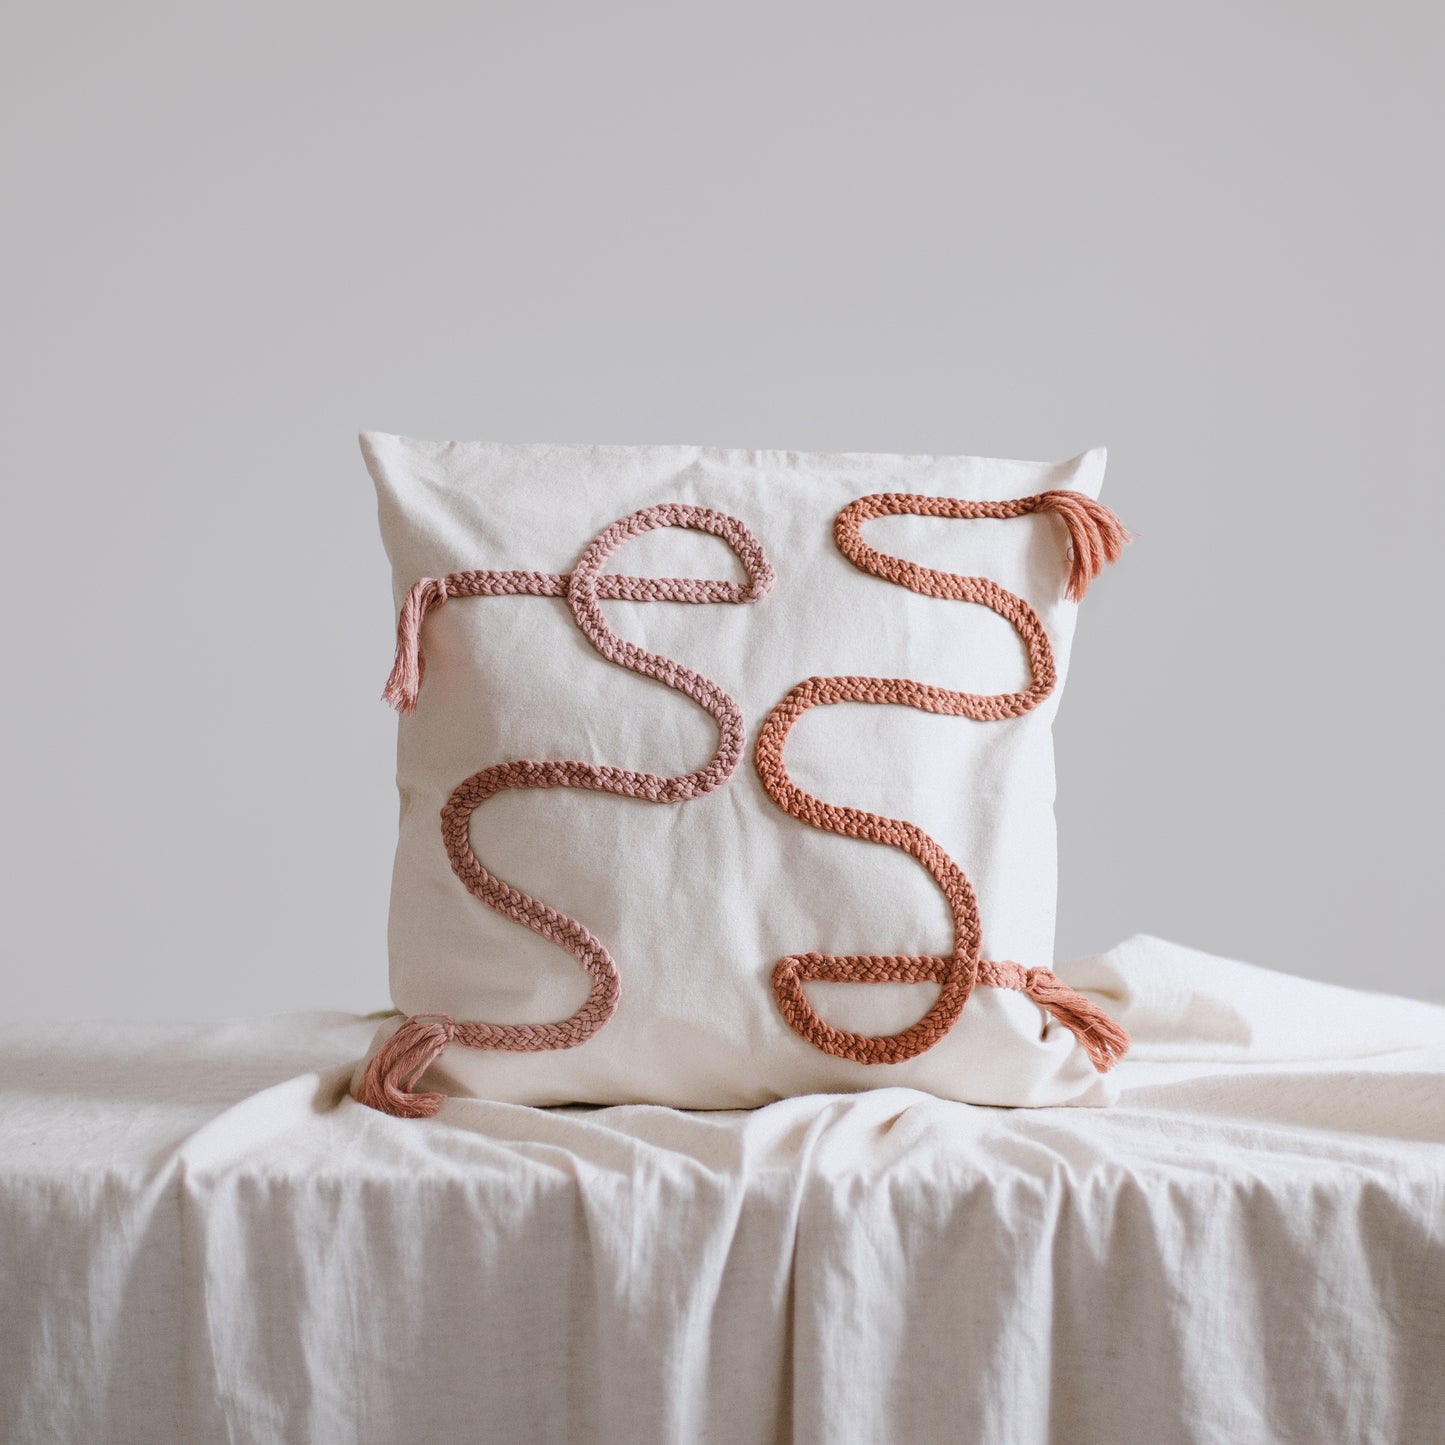 Wave cushion - Sunset - knottinger.